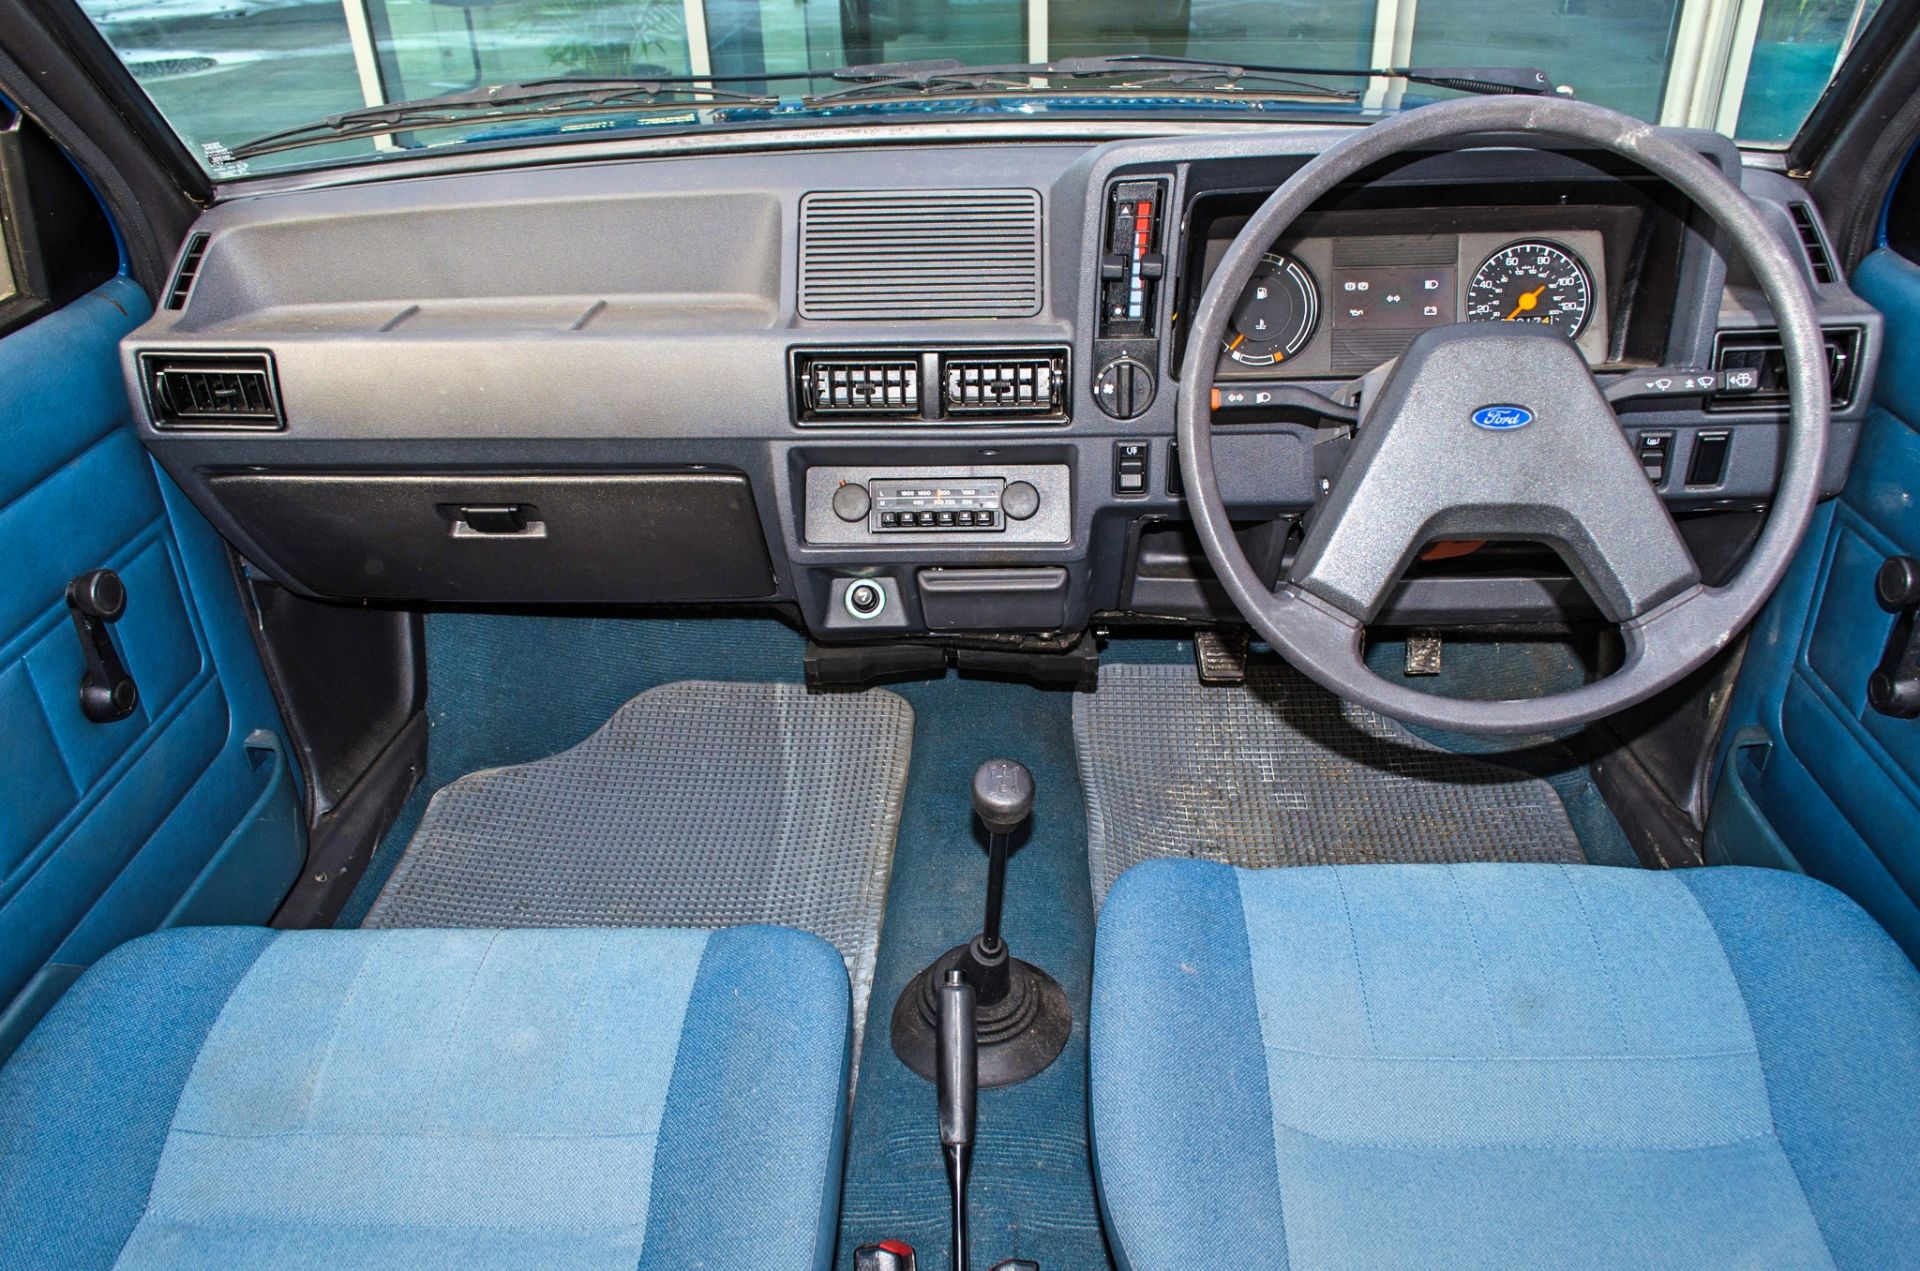 1982 Ford Escort 1.1 L 1100 cc 5 door hatchback 0nly 2017 miles - Image 36 of 50